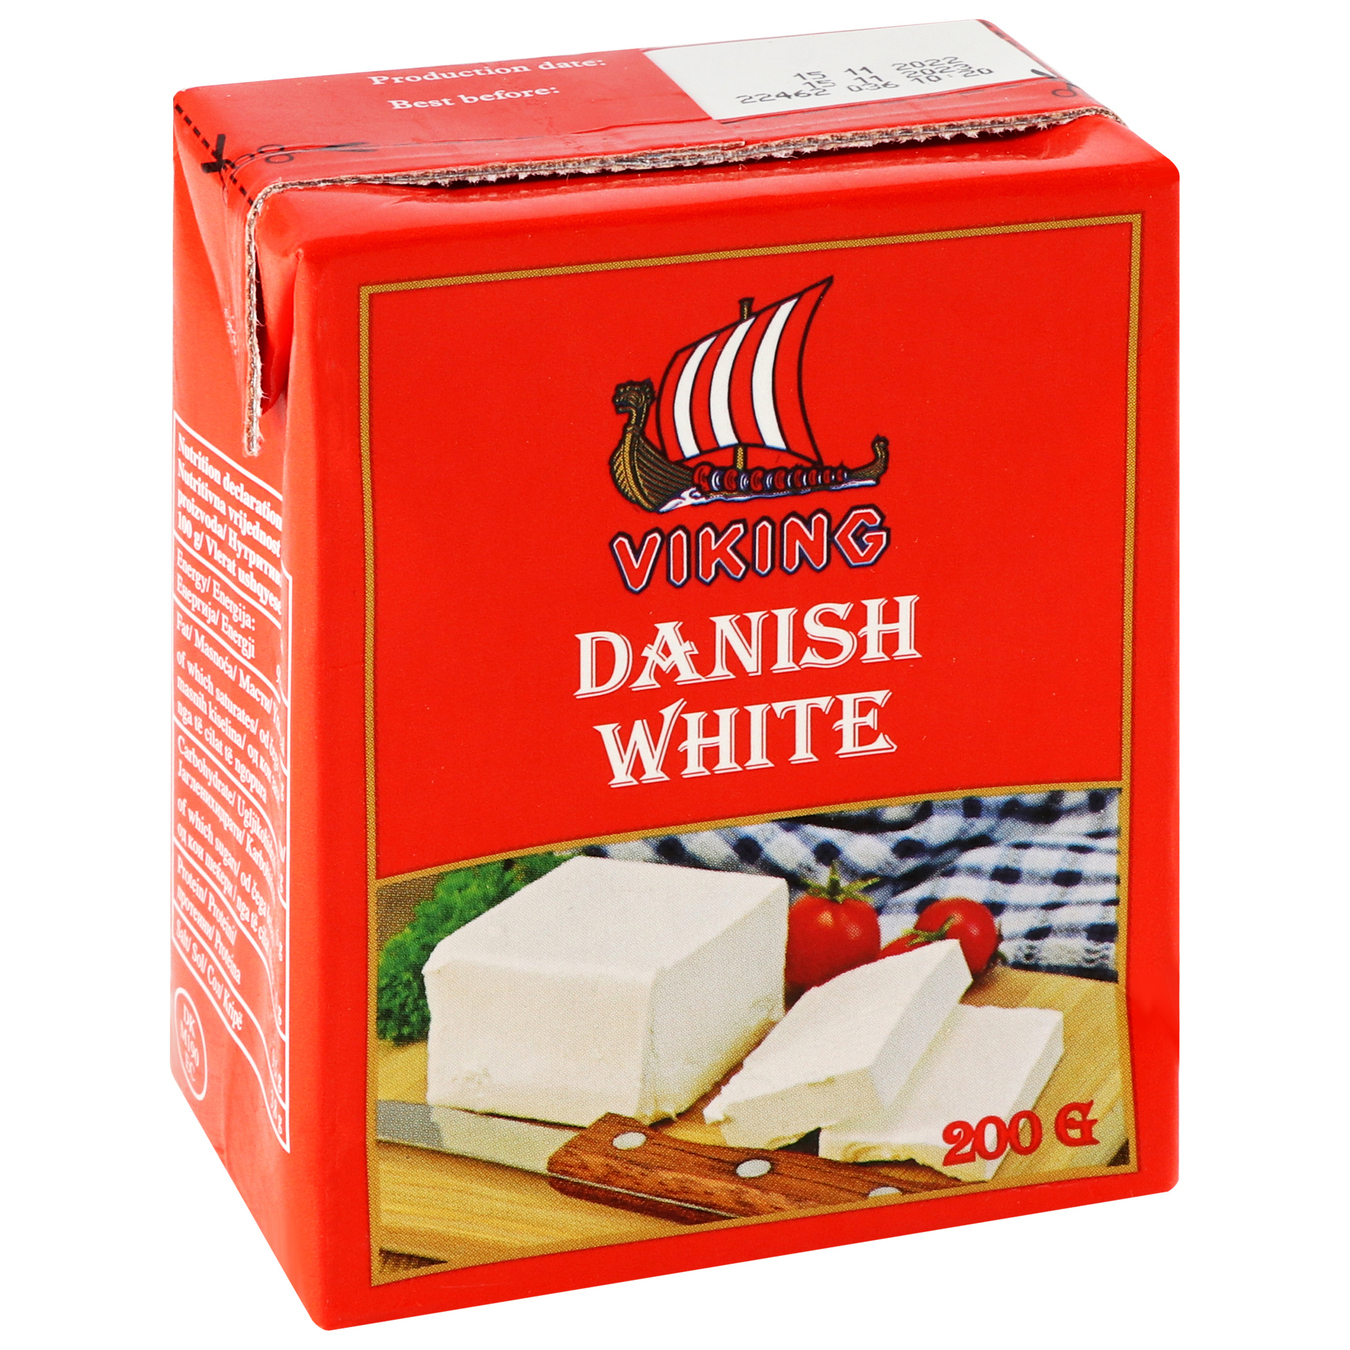 Cheese product Danish White Viking 200g 4